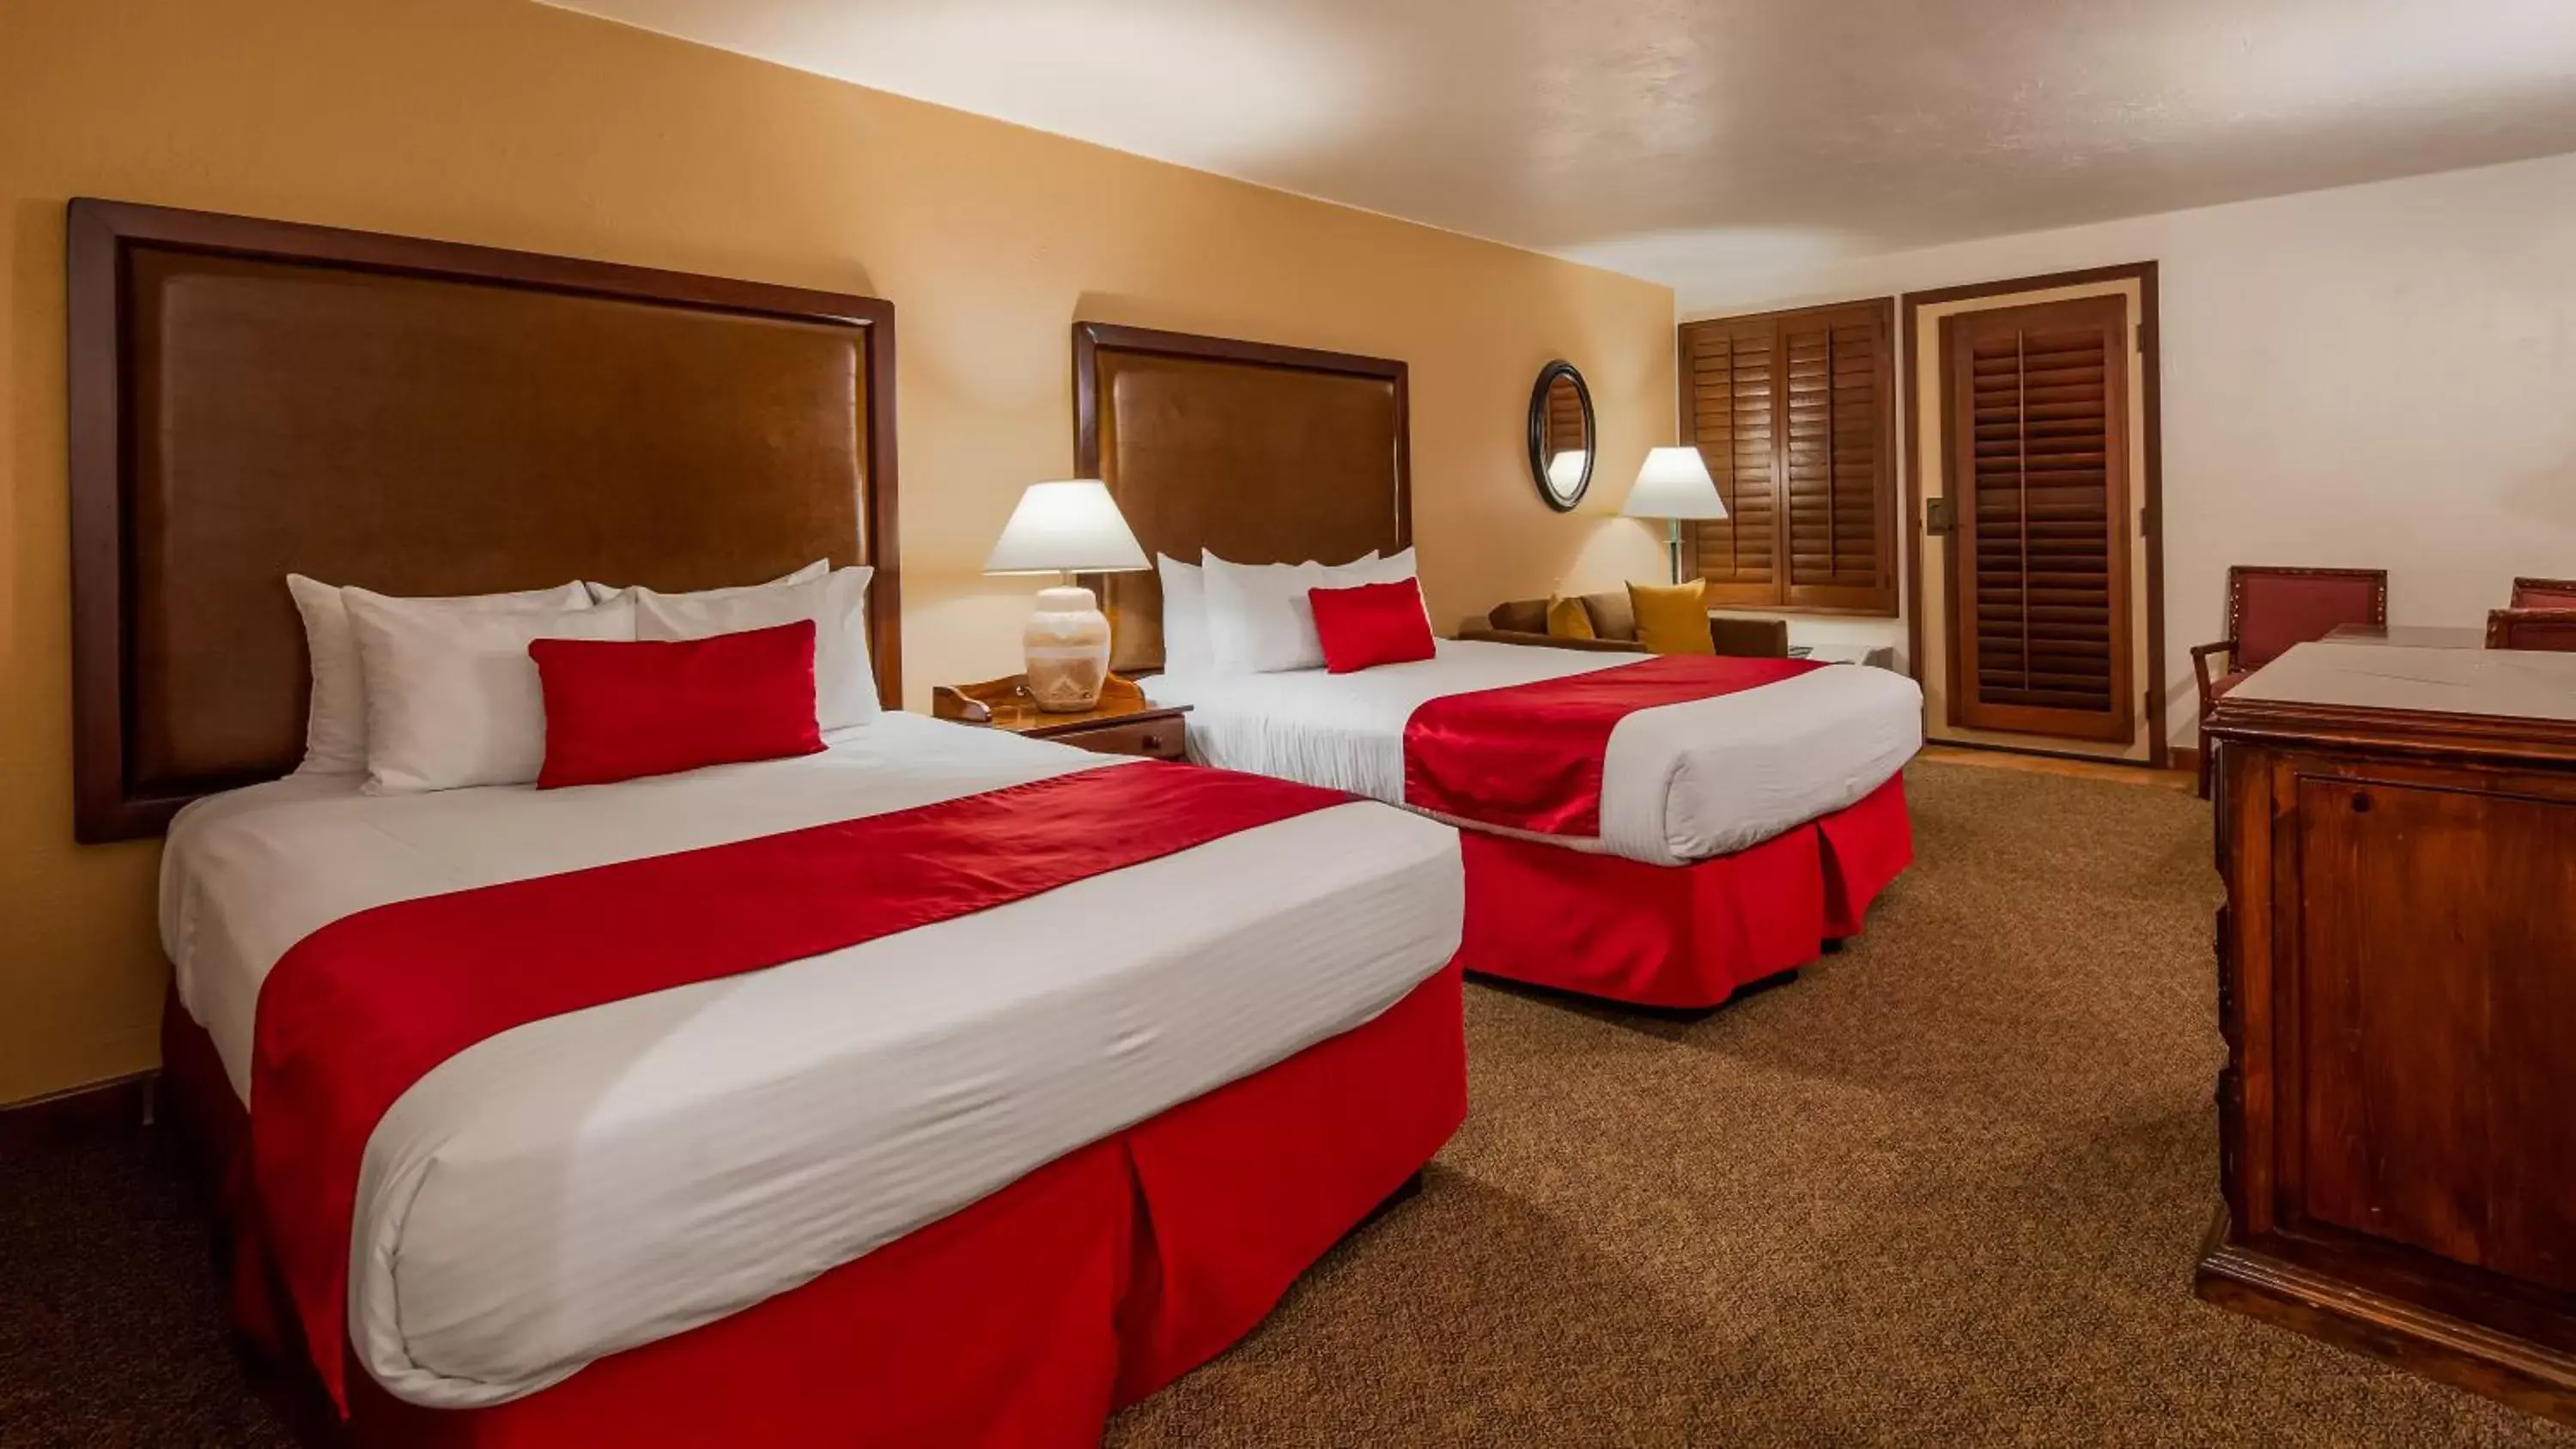 Bedroom, Bed in Best Western Plus Hacienda Hotel Old Town